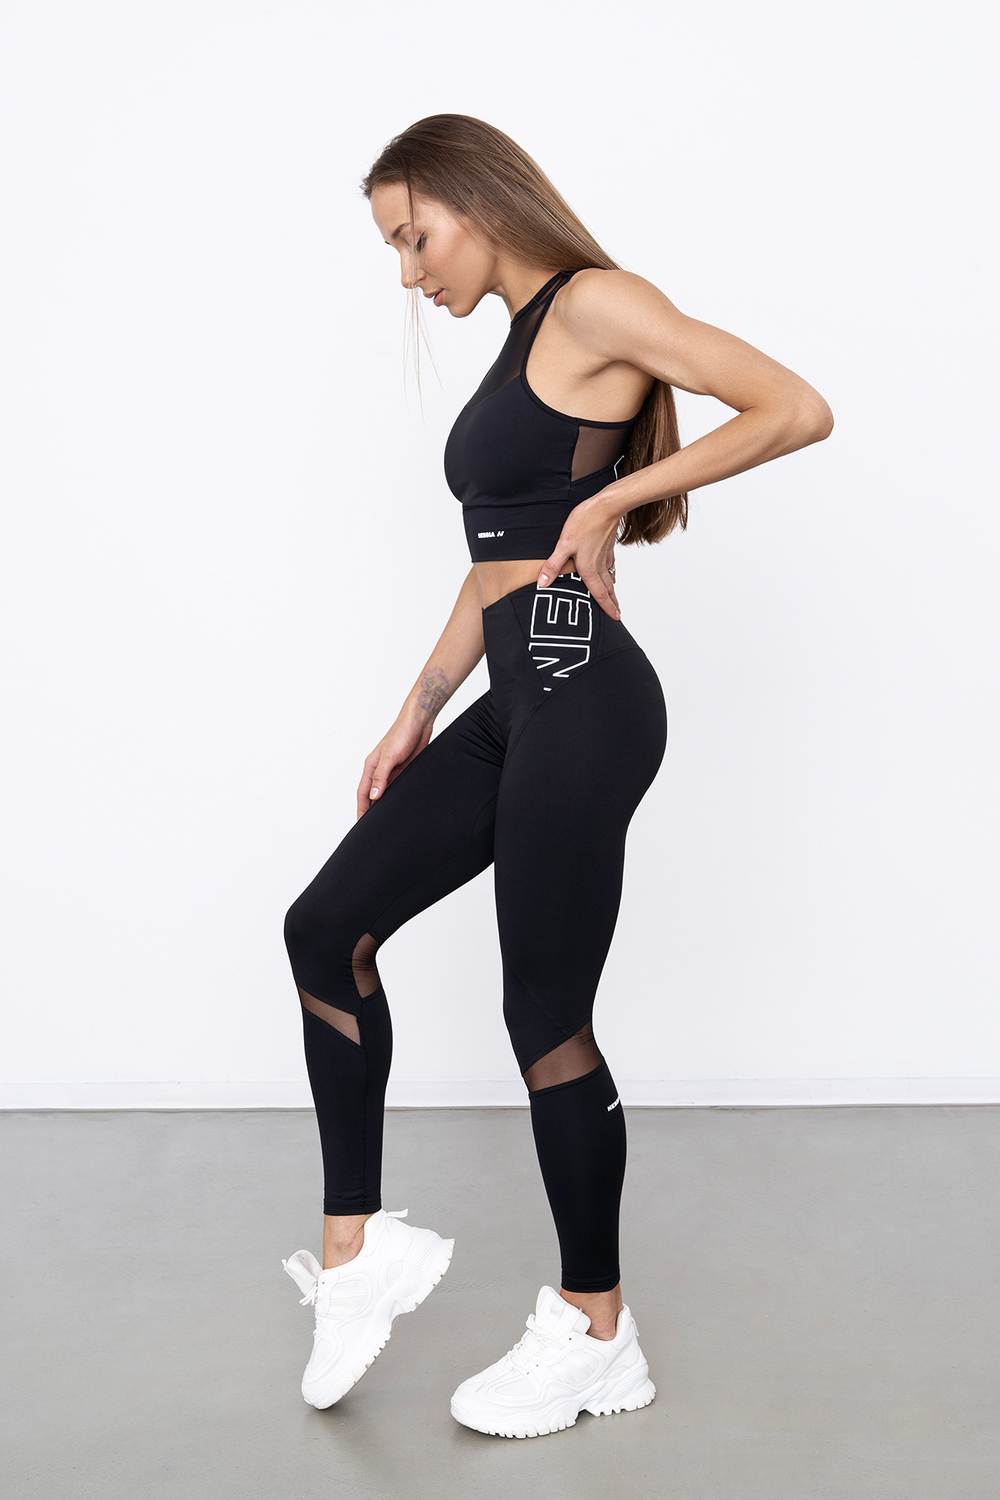 Женские лосины Nebbia 443 fit  activewear high-waist leggings black